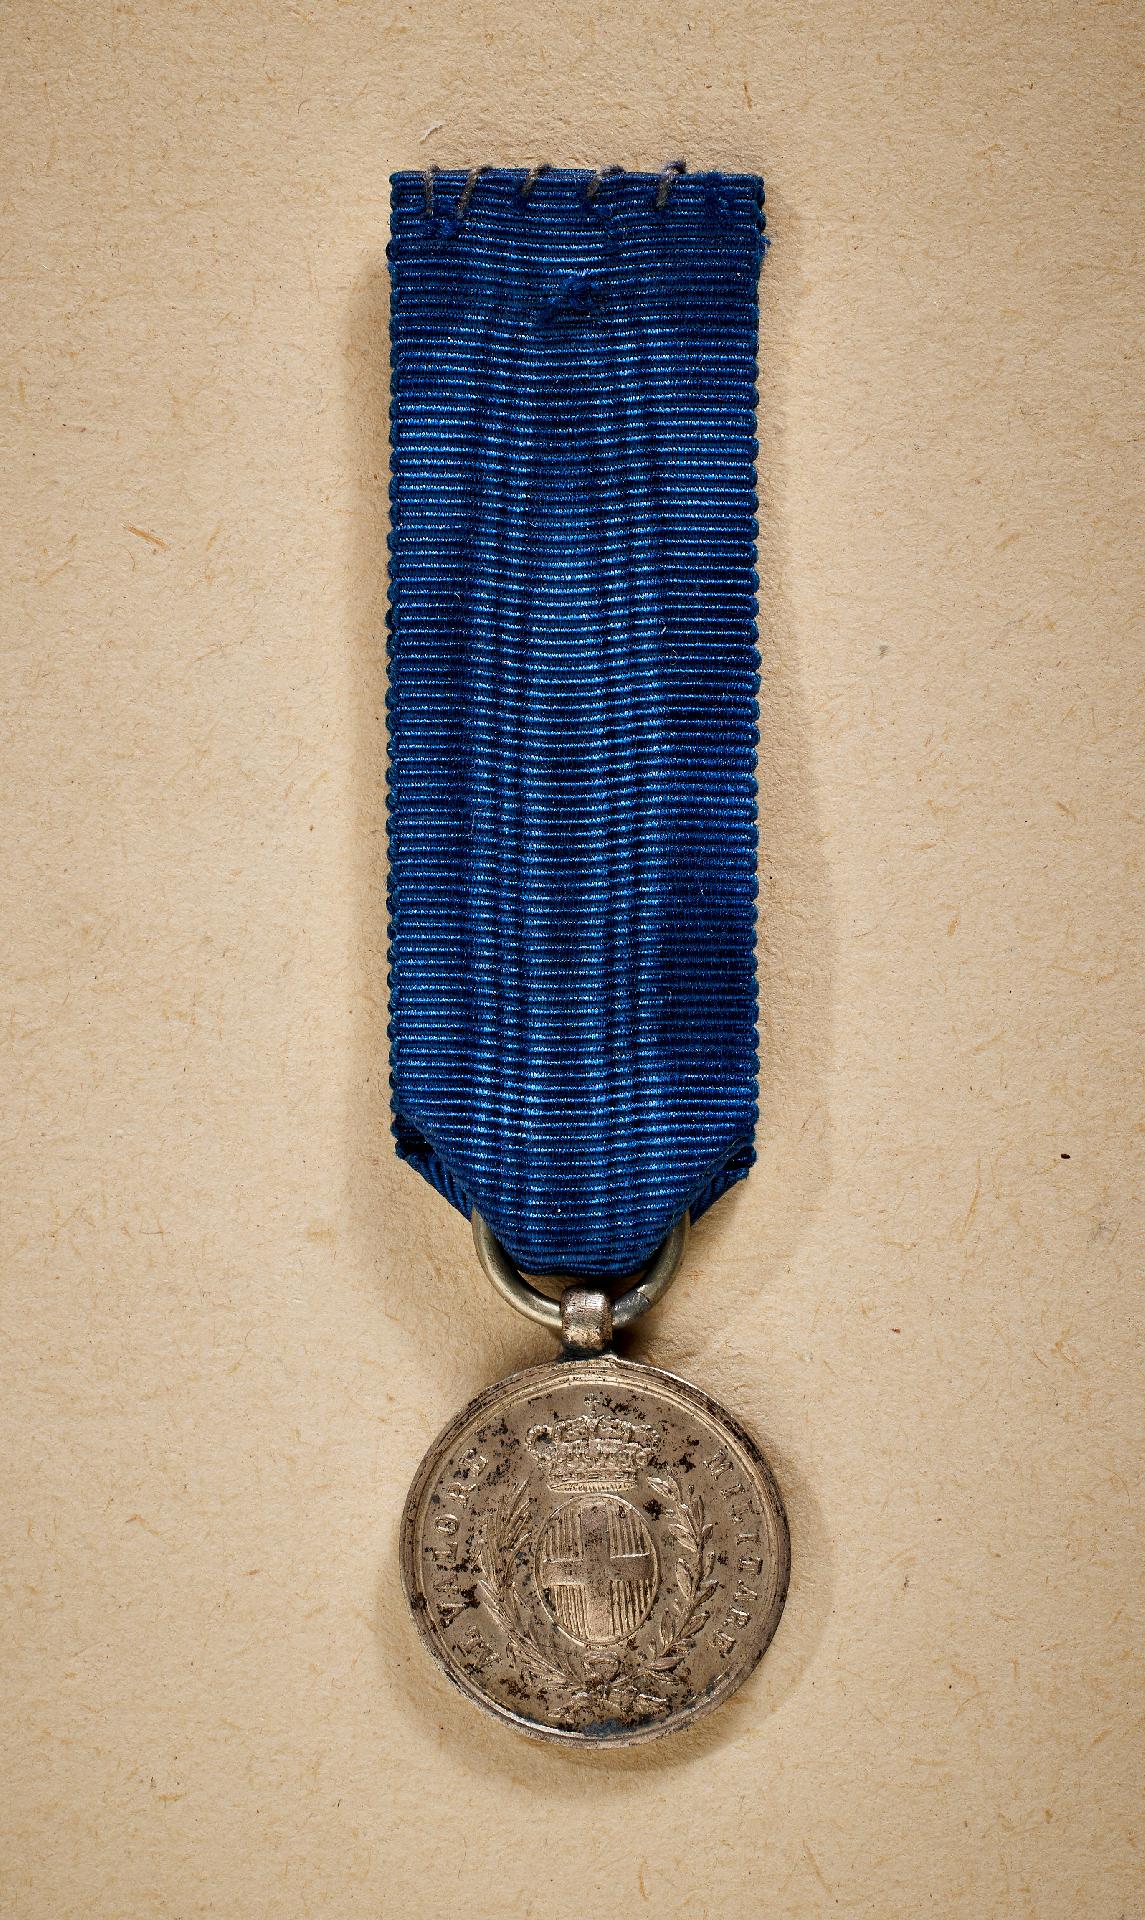 Italien : Silberne Militärverdienstmedaille "AL VALORE MILITARE" , 1917.